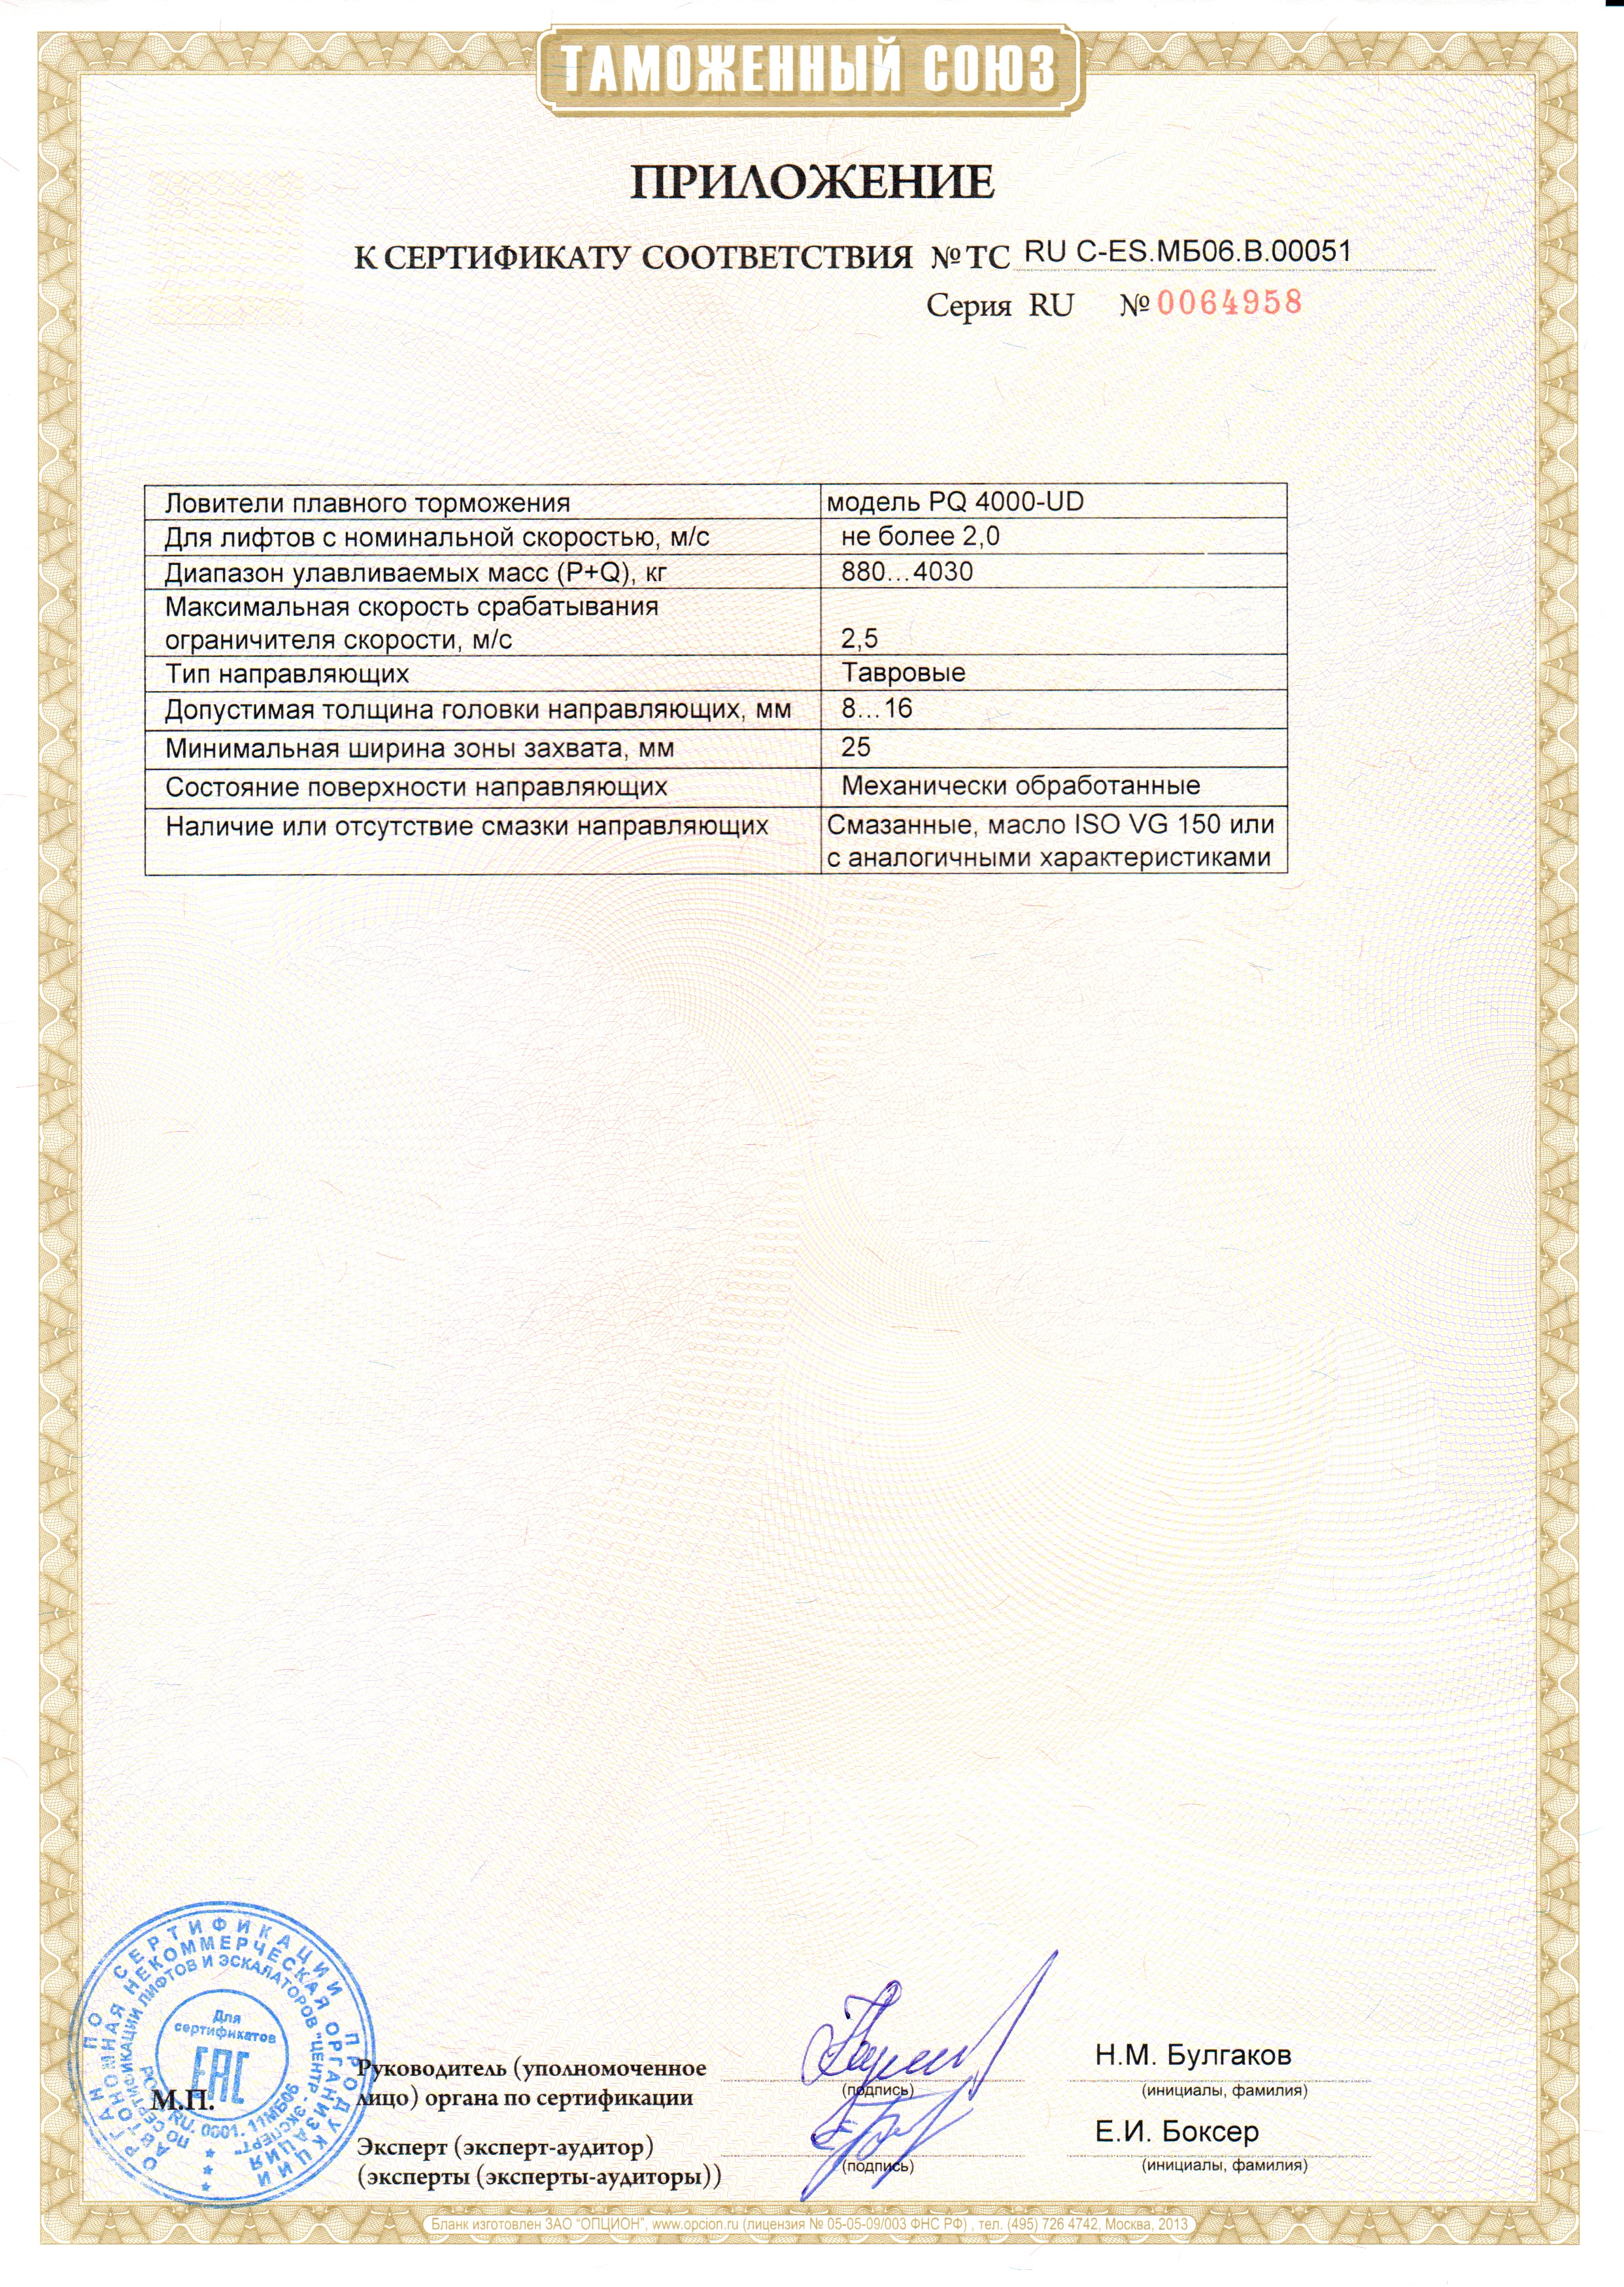 Приложение к сертификату № RU С-ES.МБ06.В00051